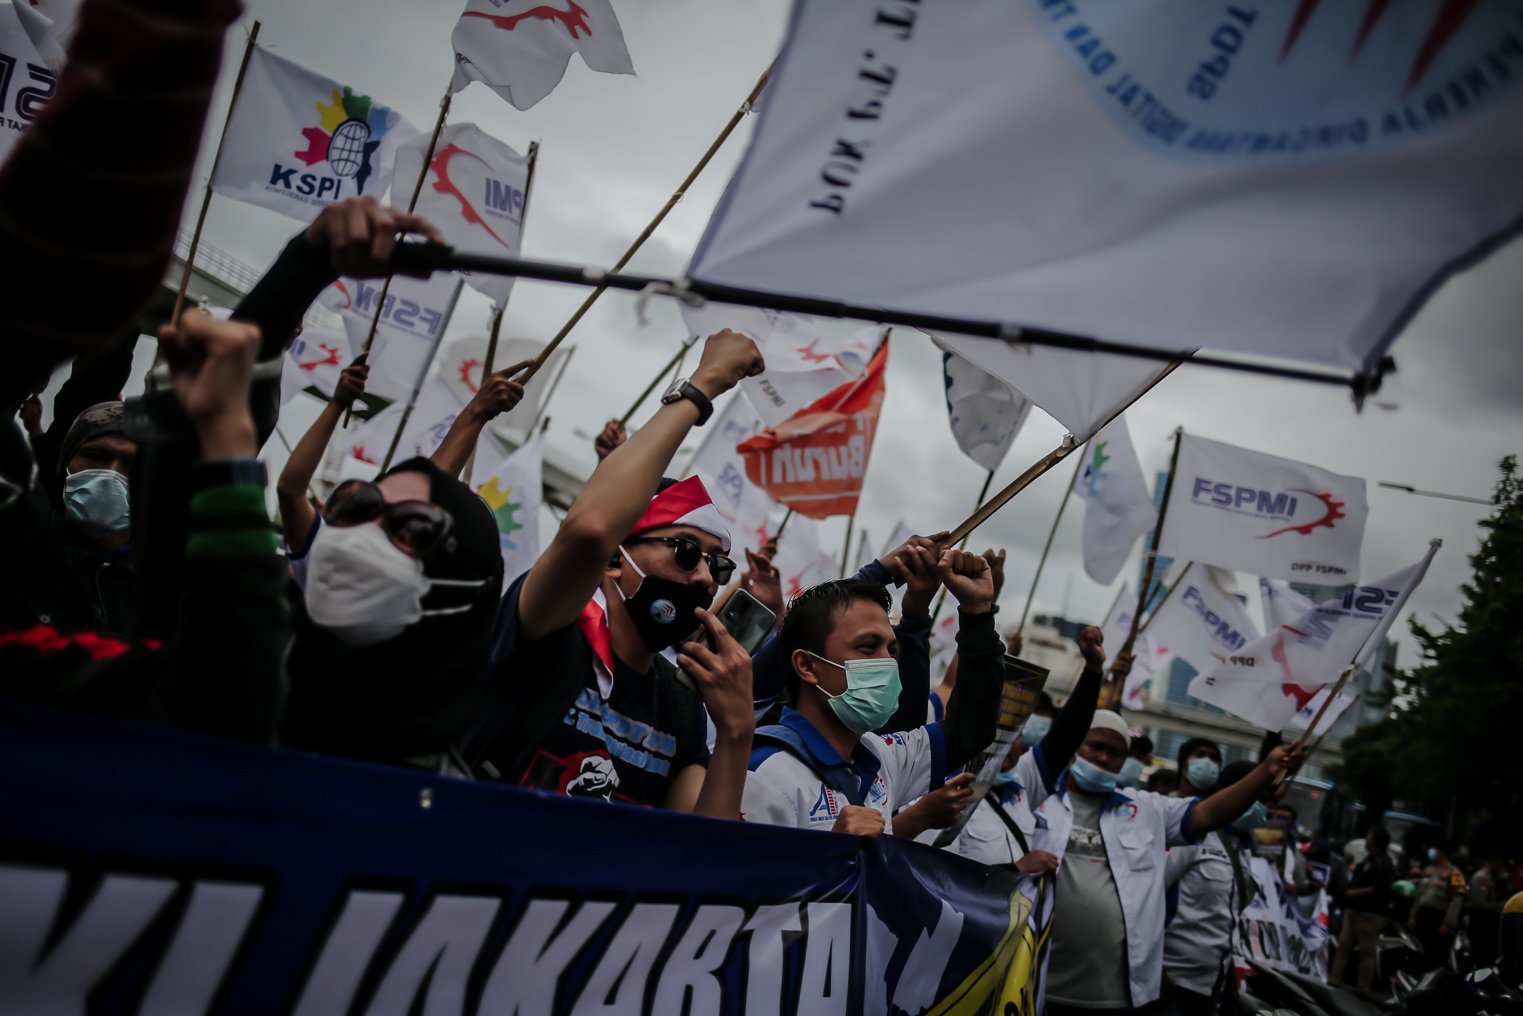 Sejumlah buruh dari berbagai serikat melakukan aksi unjuk rasa di depan Kantor Kementerian Ketenagakerjaan, Jakarta, Jumat (19/11/2021). Massa aksi menuntut Pemerintah untuk menaikan upah mininum sebesar 10 persen pada tahun 2022 dan segera mencabut Surat Edaran (SE) Menteri Ketenagakerjaan tentang penetapan upah minimum tahun 2022.